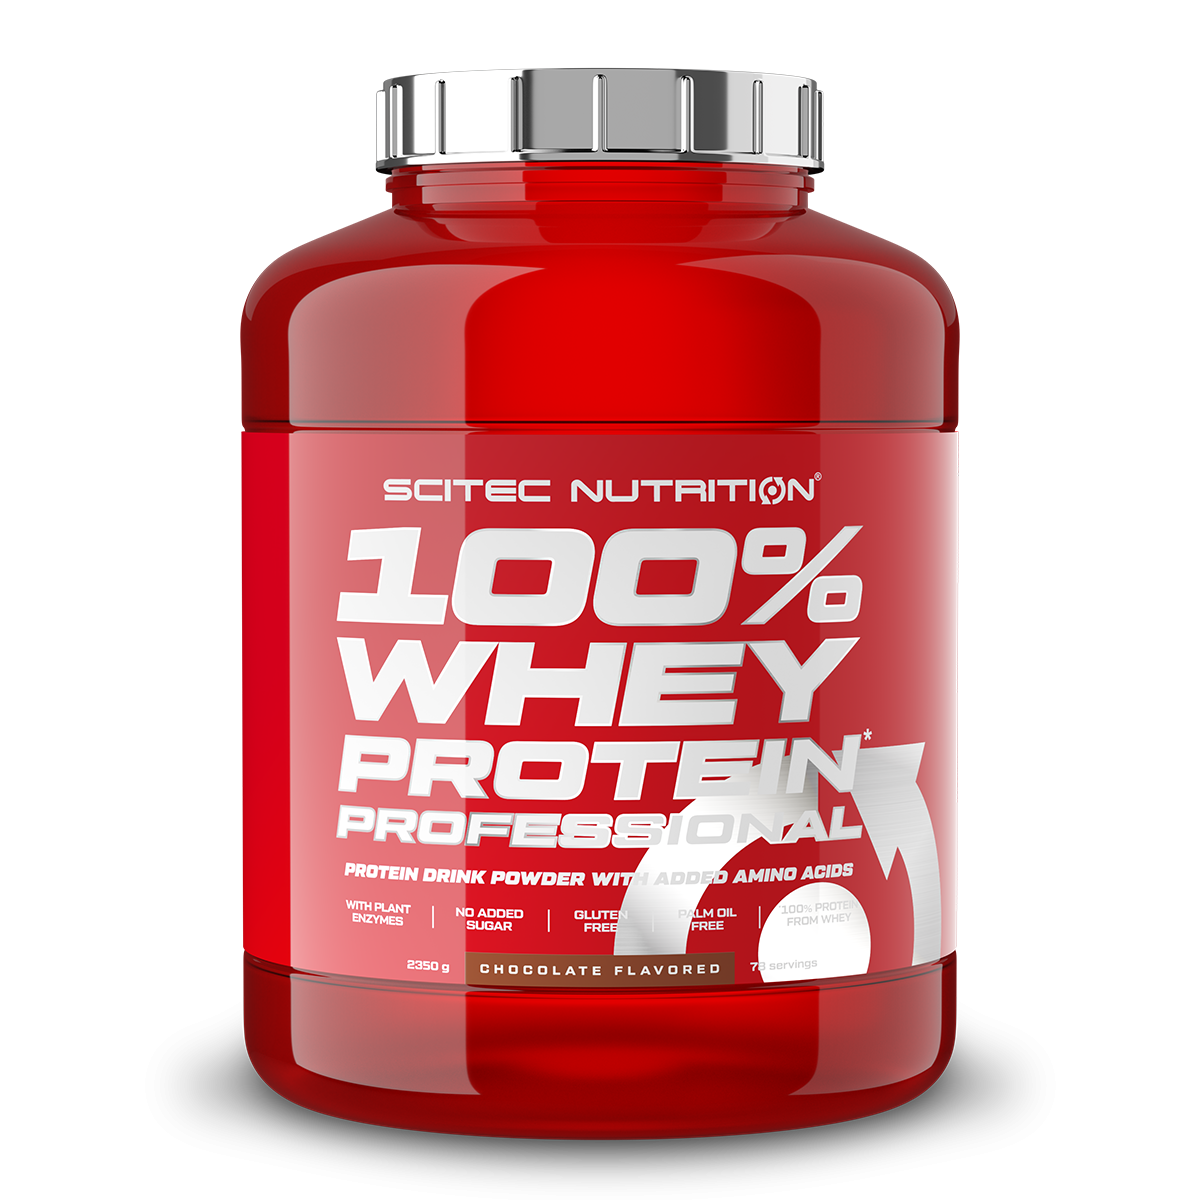 Scitec Nutrition 100% Whey Protein Professional mit extra zusätzlichen Aminosäuren und Verdauungsenzymen, Beinhaltet keinen Zuckerzusatz, 2.35 kg, Kokosnuss